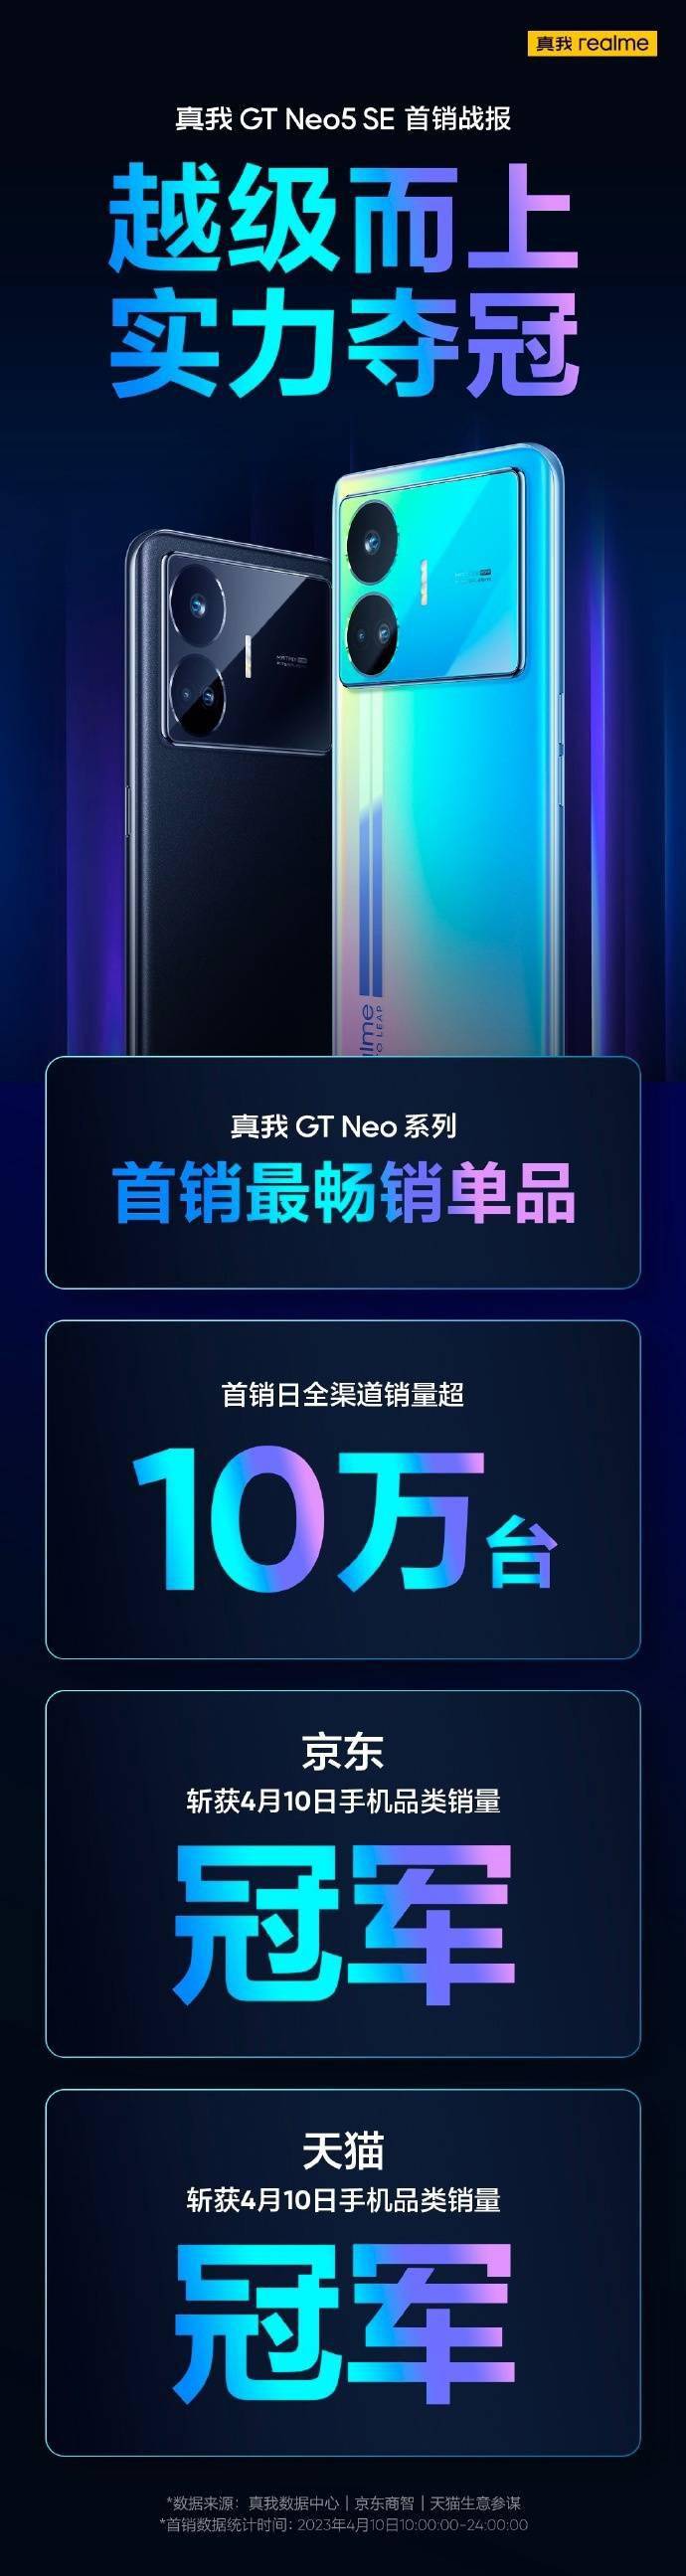 手机gps:realme GT Neo5 SE手机首销日全渠道销量超10万台